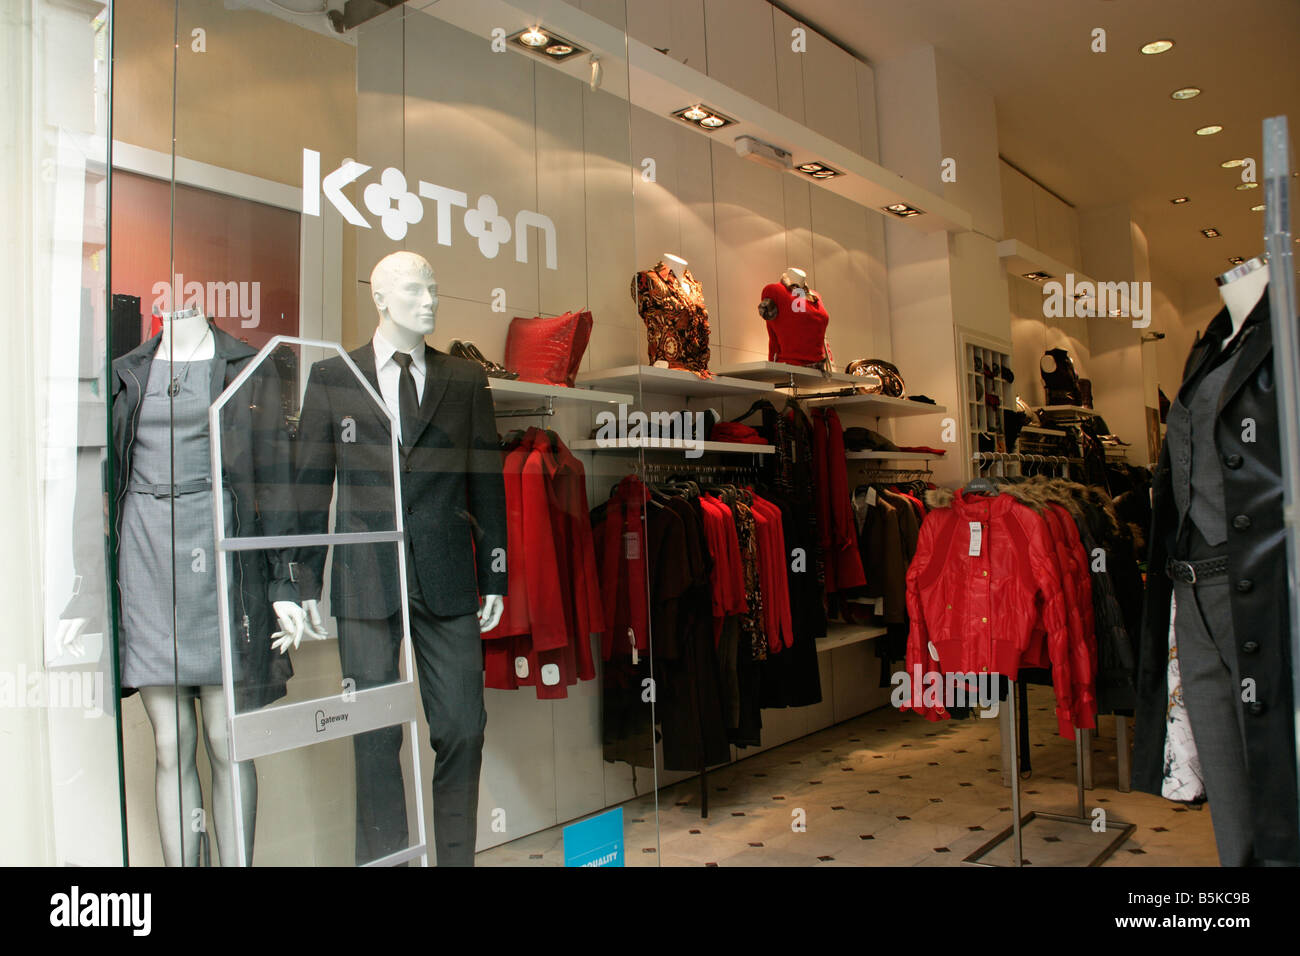 Koton türkische Kleidung Outlet auf der Istiklal Caddesi, Istanbul, Türkei  Stockfotografie - Alamy